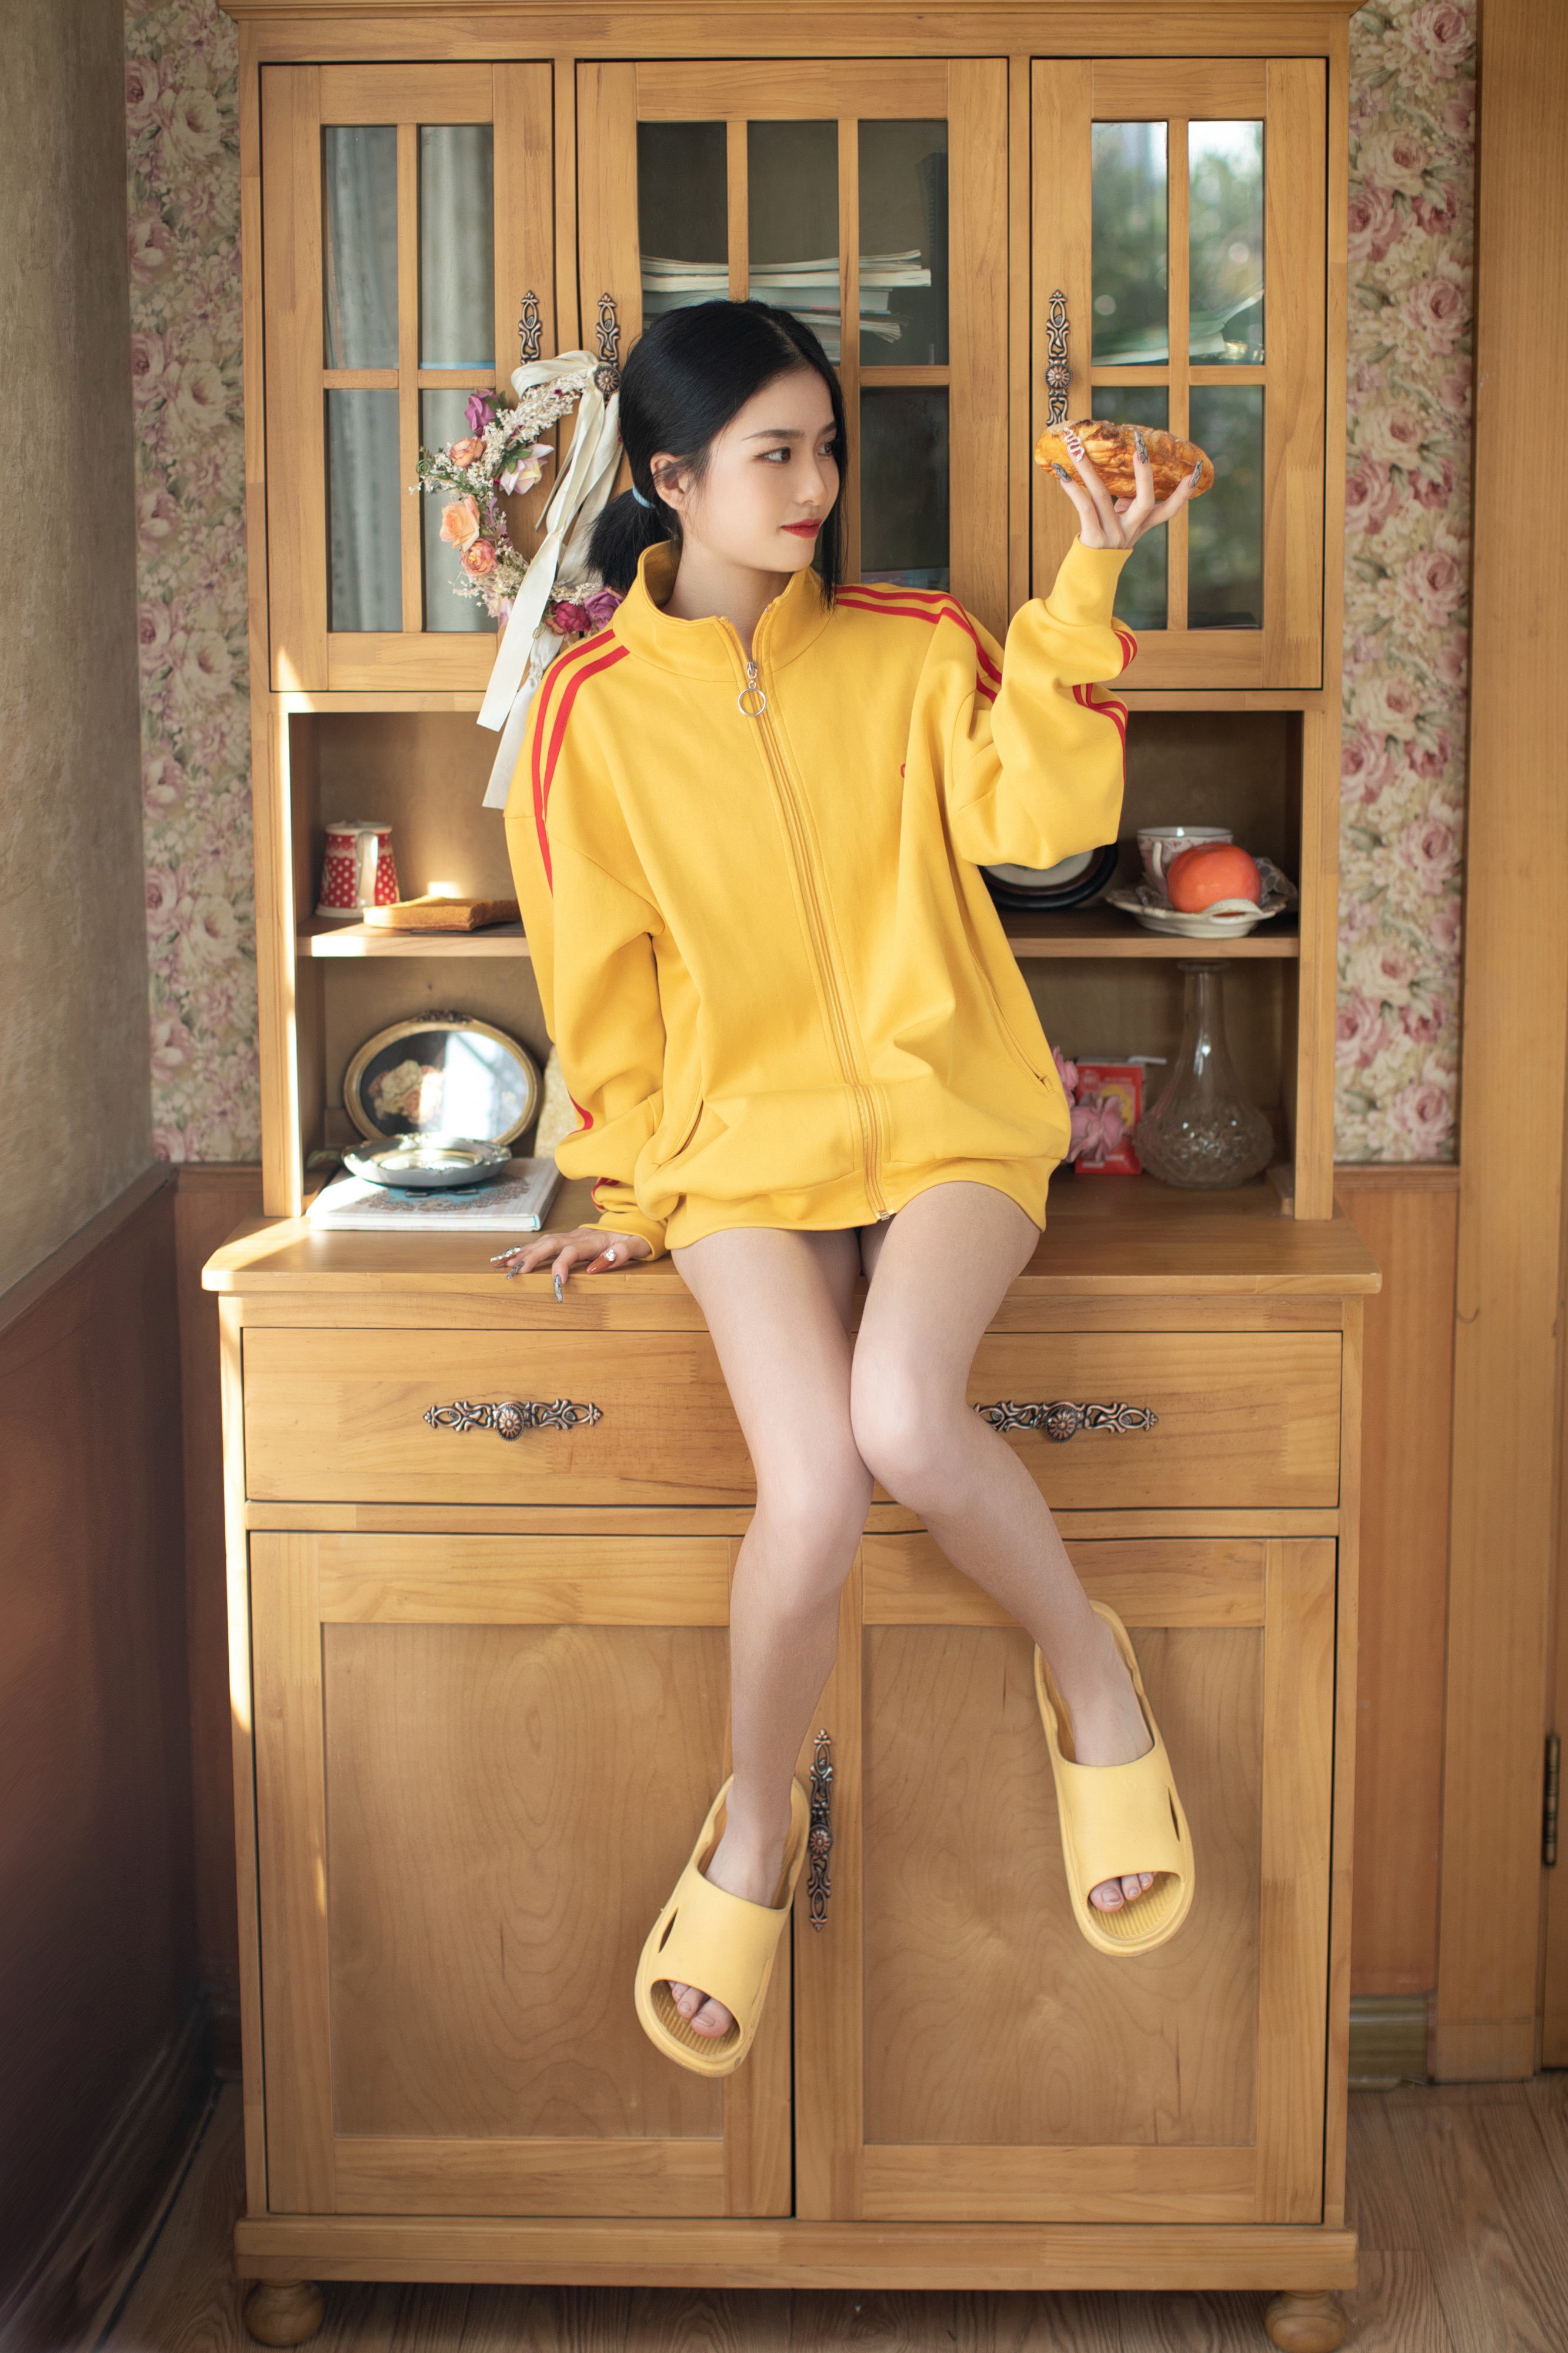 People 2666x4000 women Chinese model Asian yellow tops sweater Jing yan